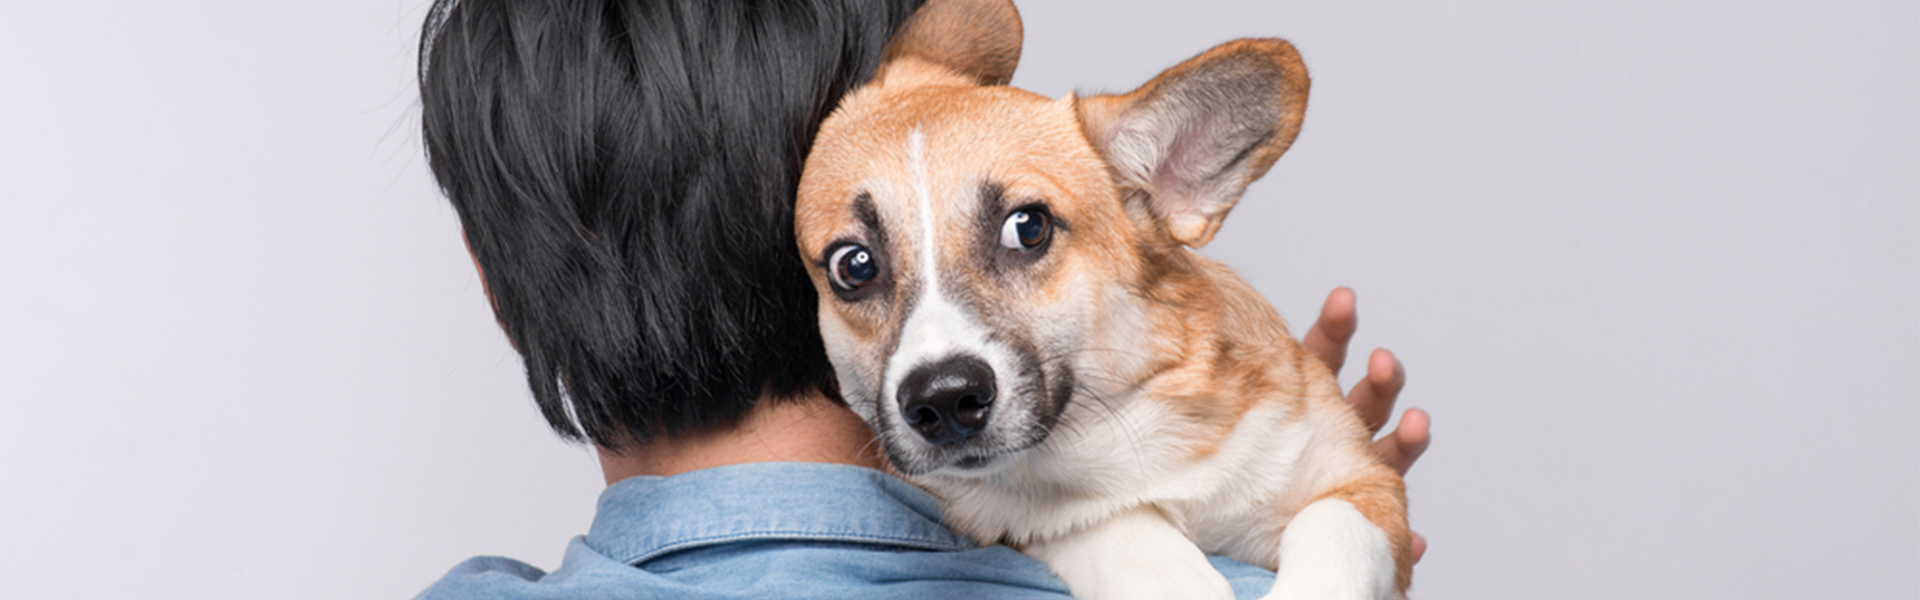 Не справляется с собакой. Собака умняка. Не справляюсь с собакой. Что поможет напугать собаку. Dogs can smell people’s stress – New study.